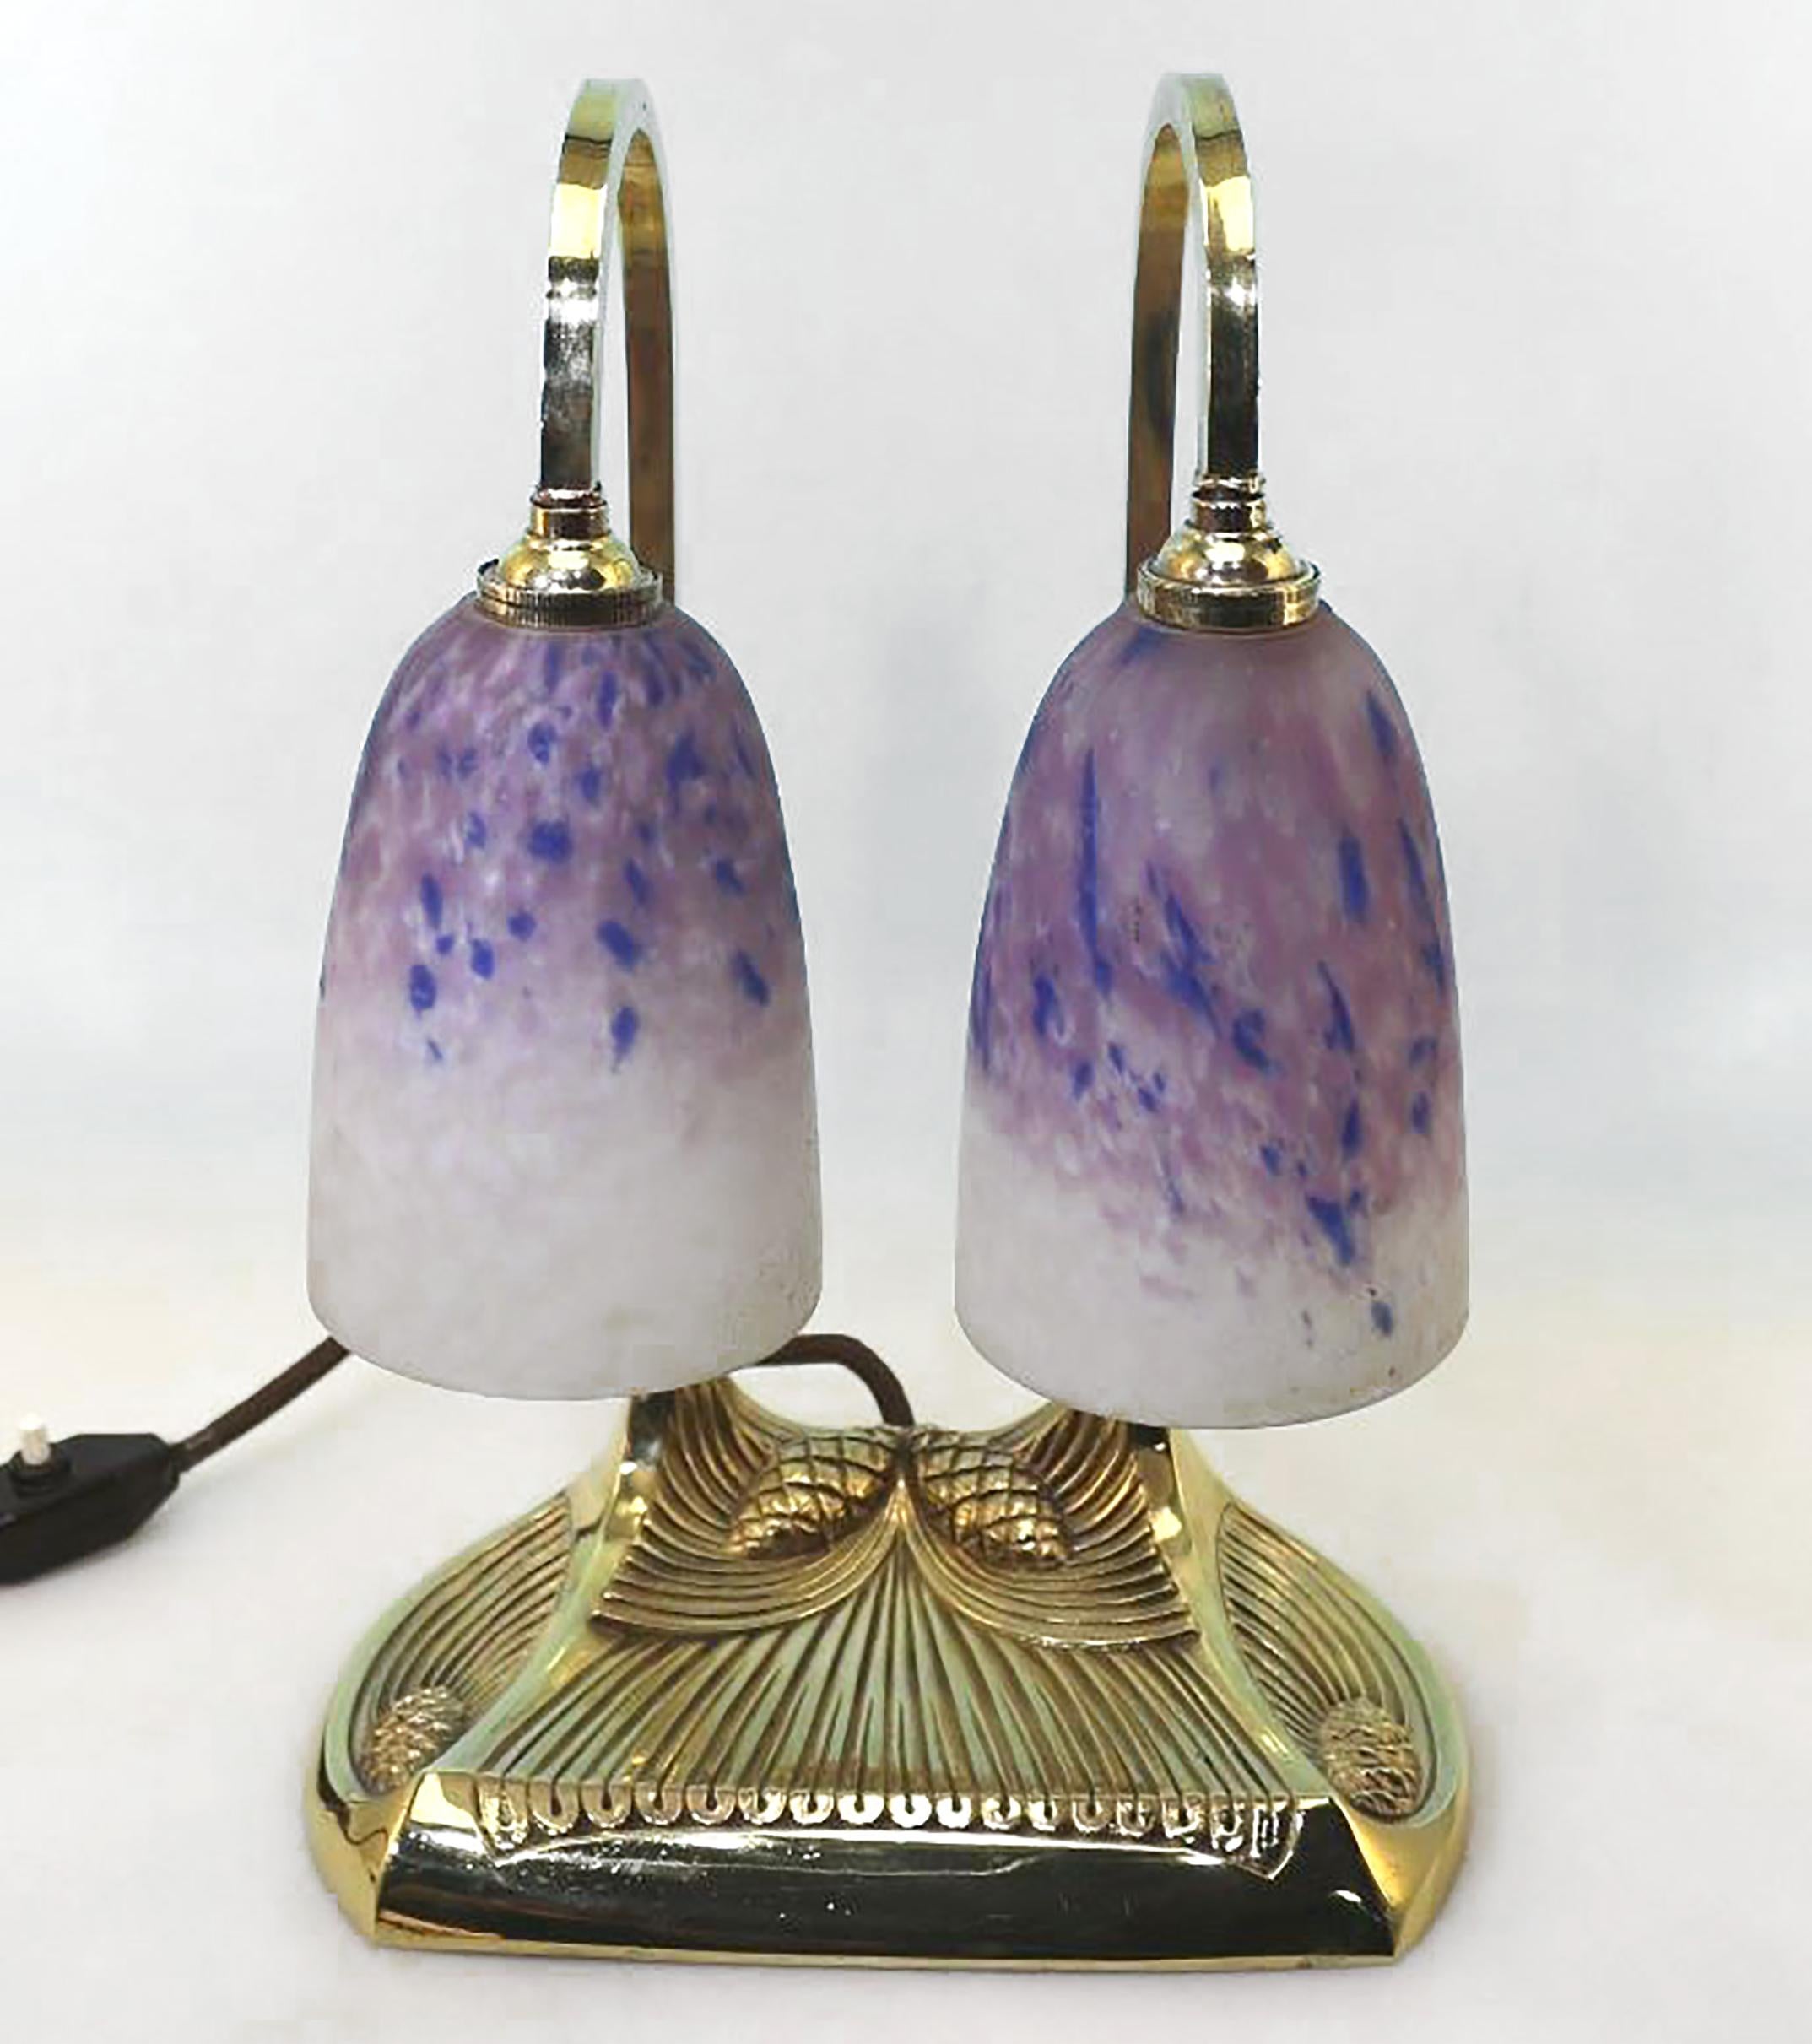 Lampe double en bronze poli Schneider verre Pâte de verre, signée (Robert) BOUSQUET (1894-1917)

Lampe au design conique, abat-jour en pâte de verre, signée sur le côté d'un cachet de gravure, 